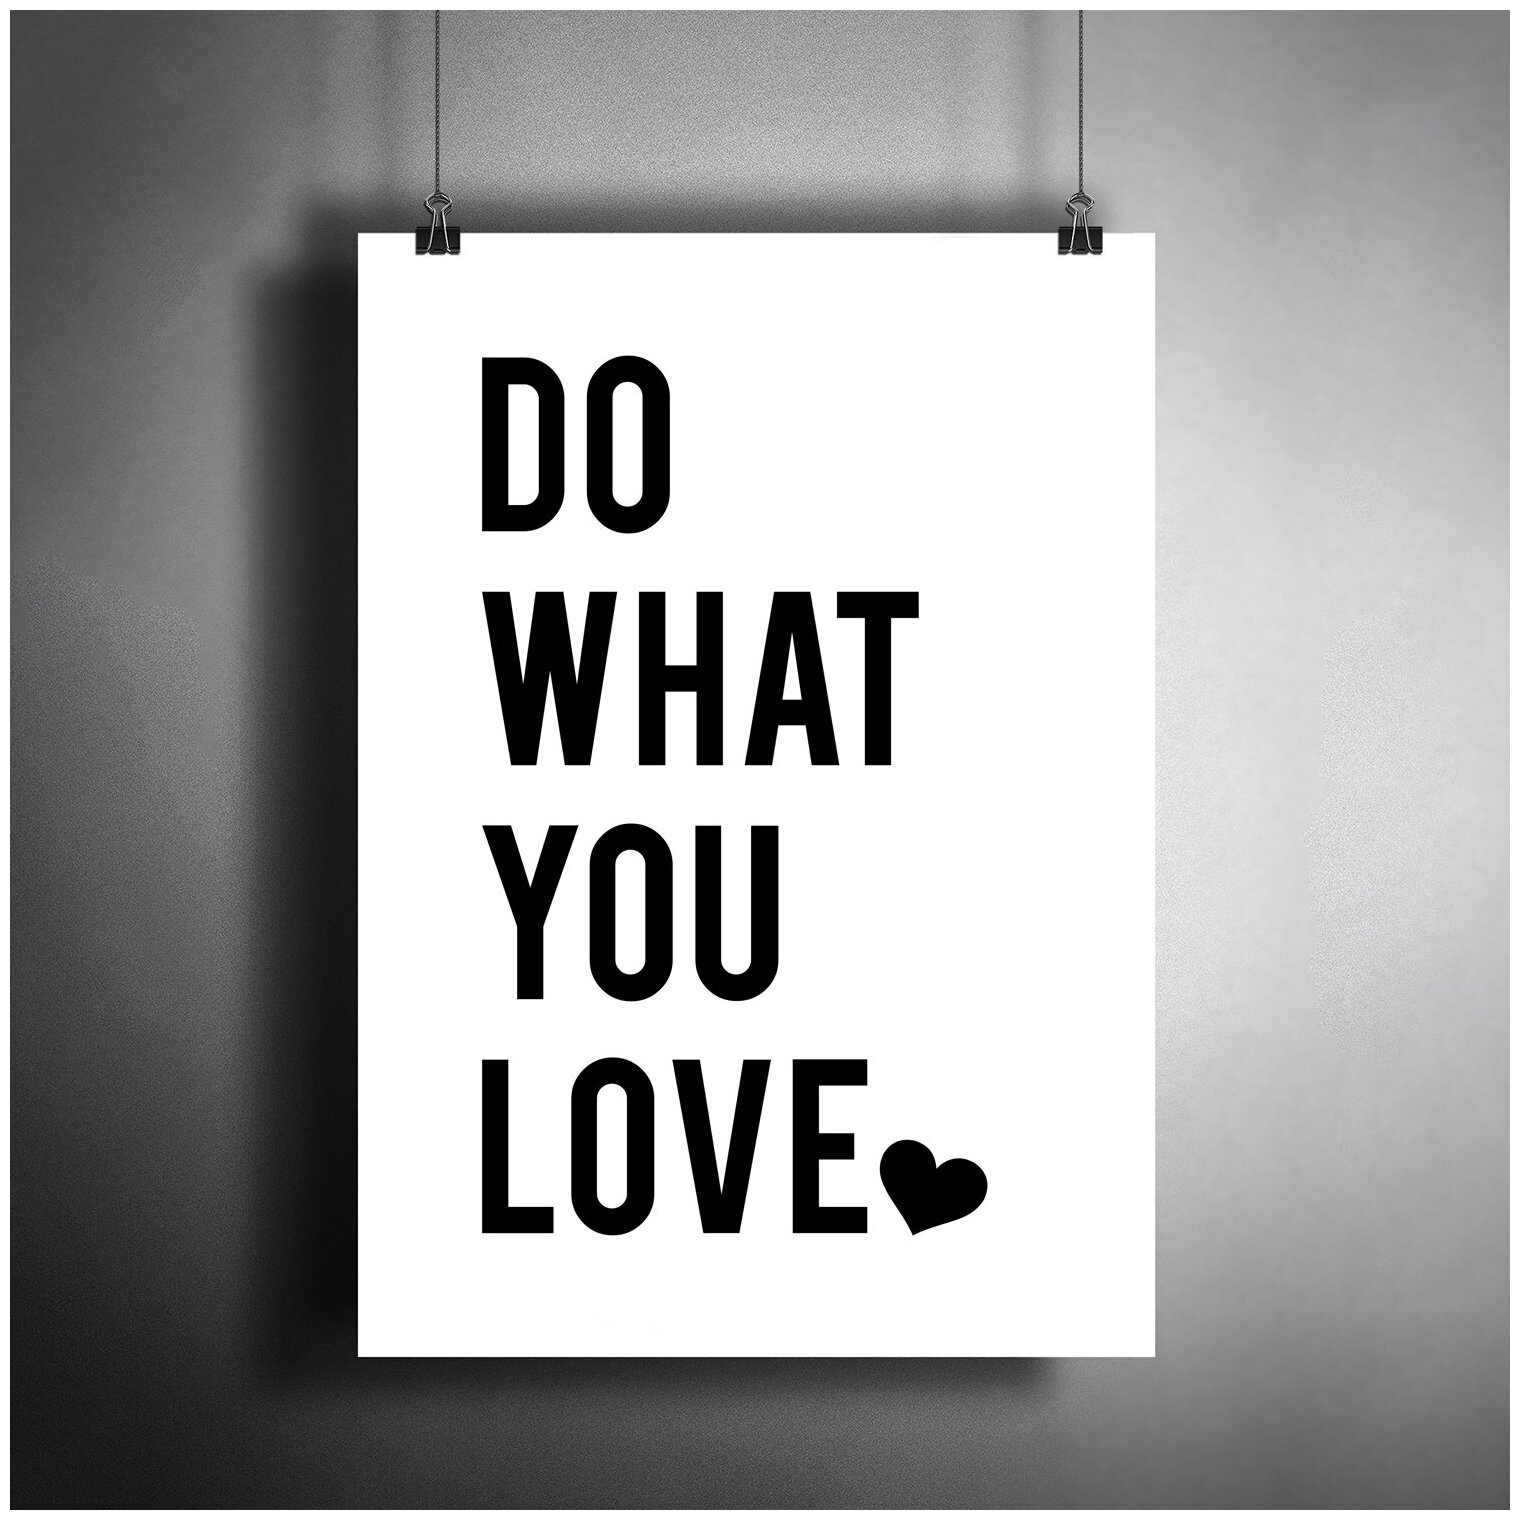 Постер плакат для интерьера "Мотивация: Делай то, что любишь. Do What You Love"/ Декор дома, офиса, комнаты A3 (297 x 420 мм)